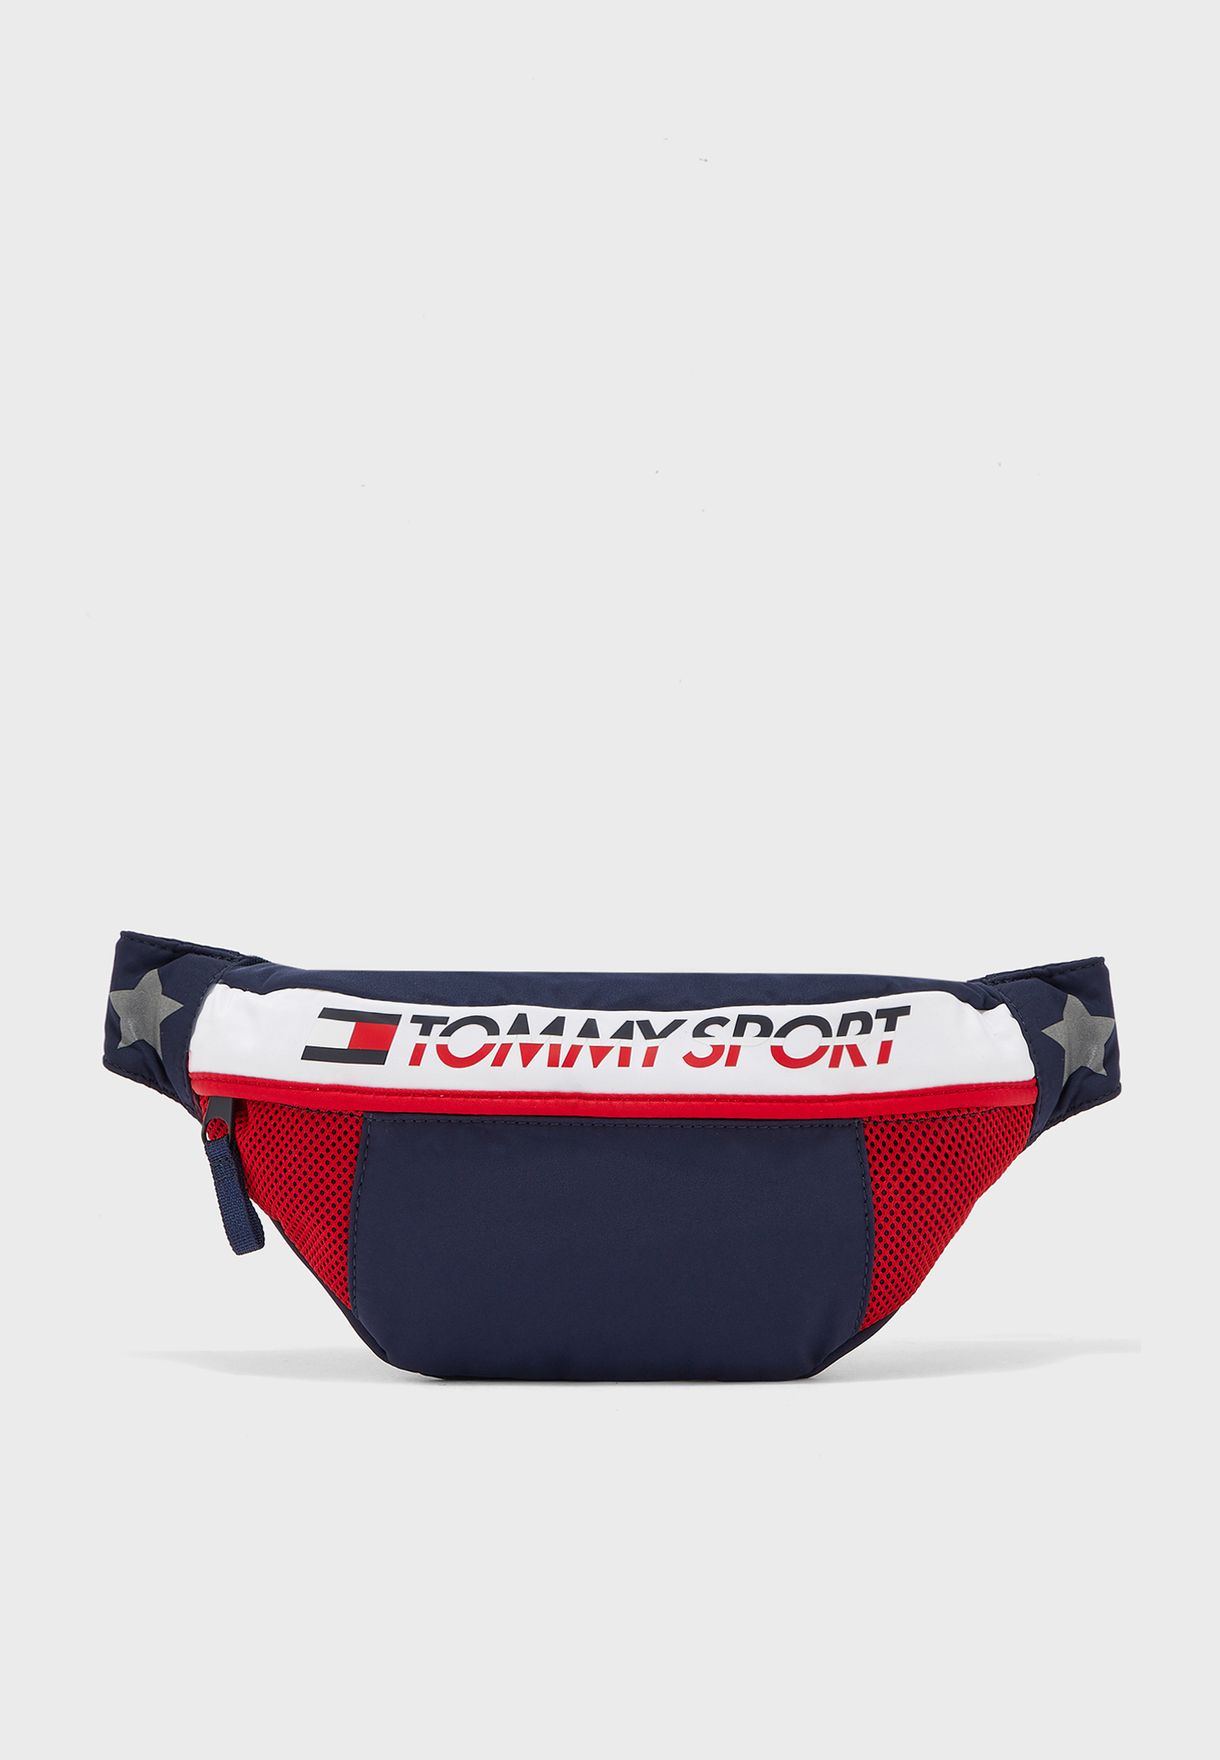 tommy sport bag